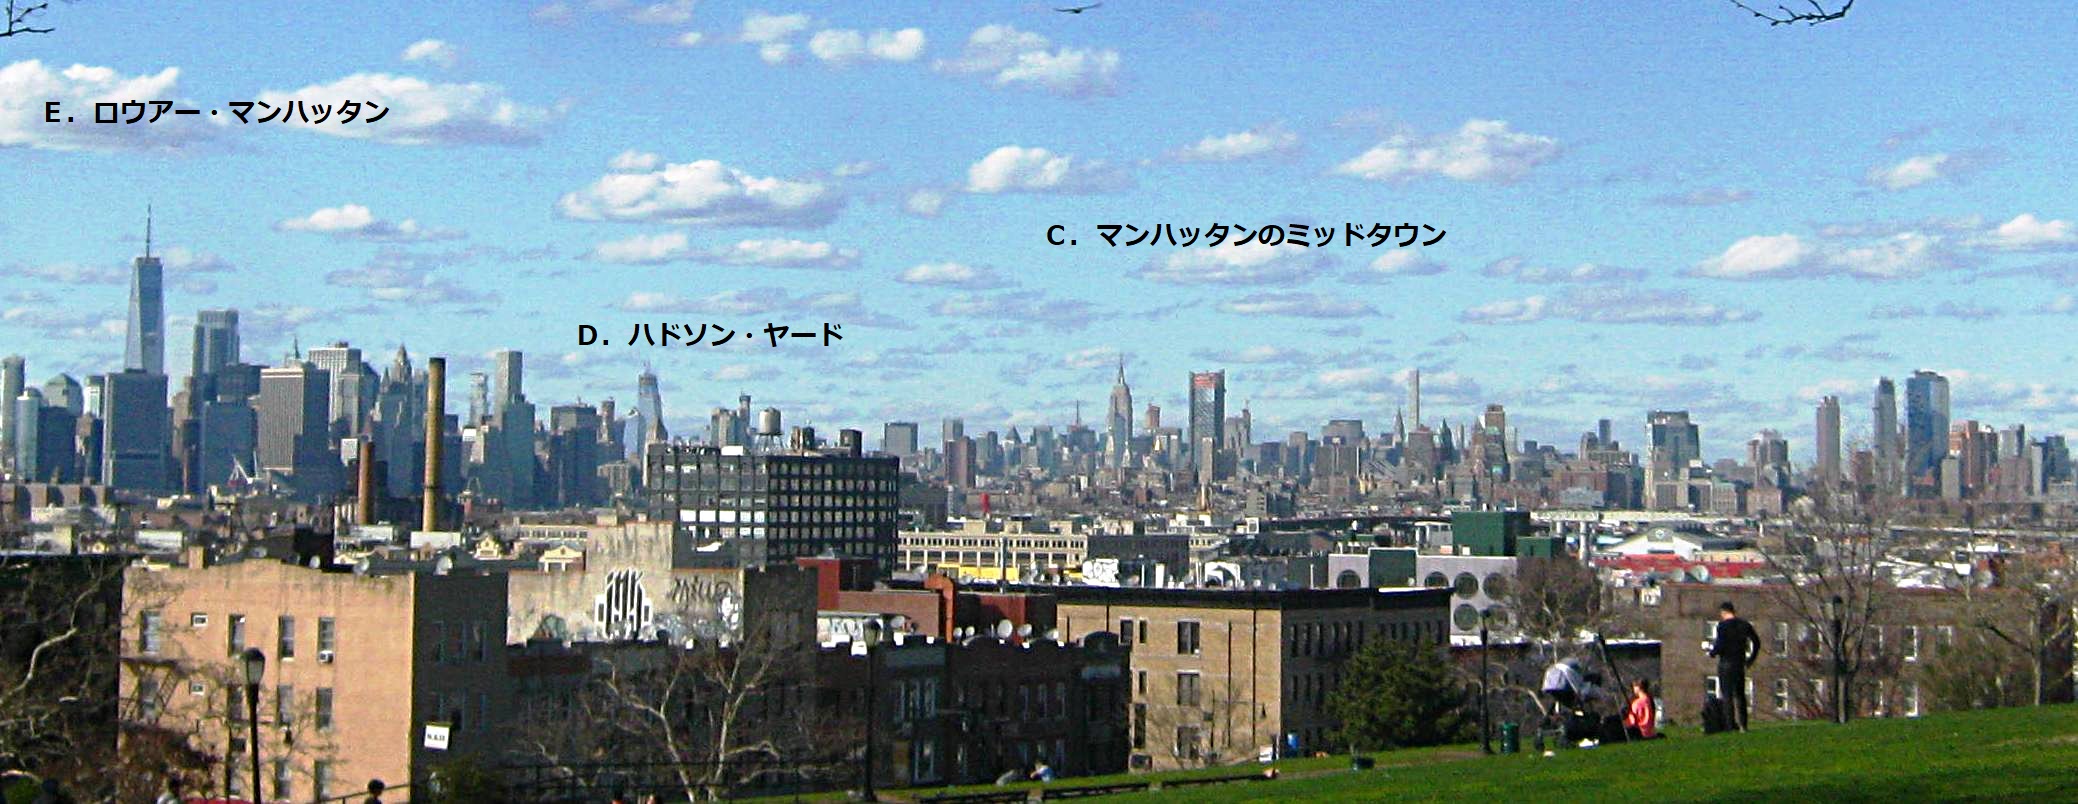 ブルックリン サンセット公園からのニューヨーク高層ビル街 岡部の海外情報